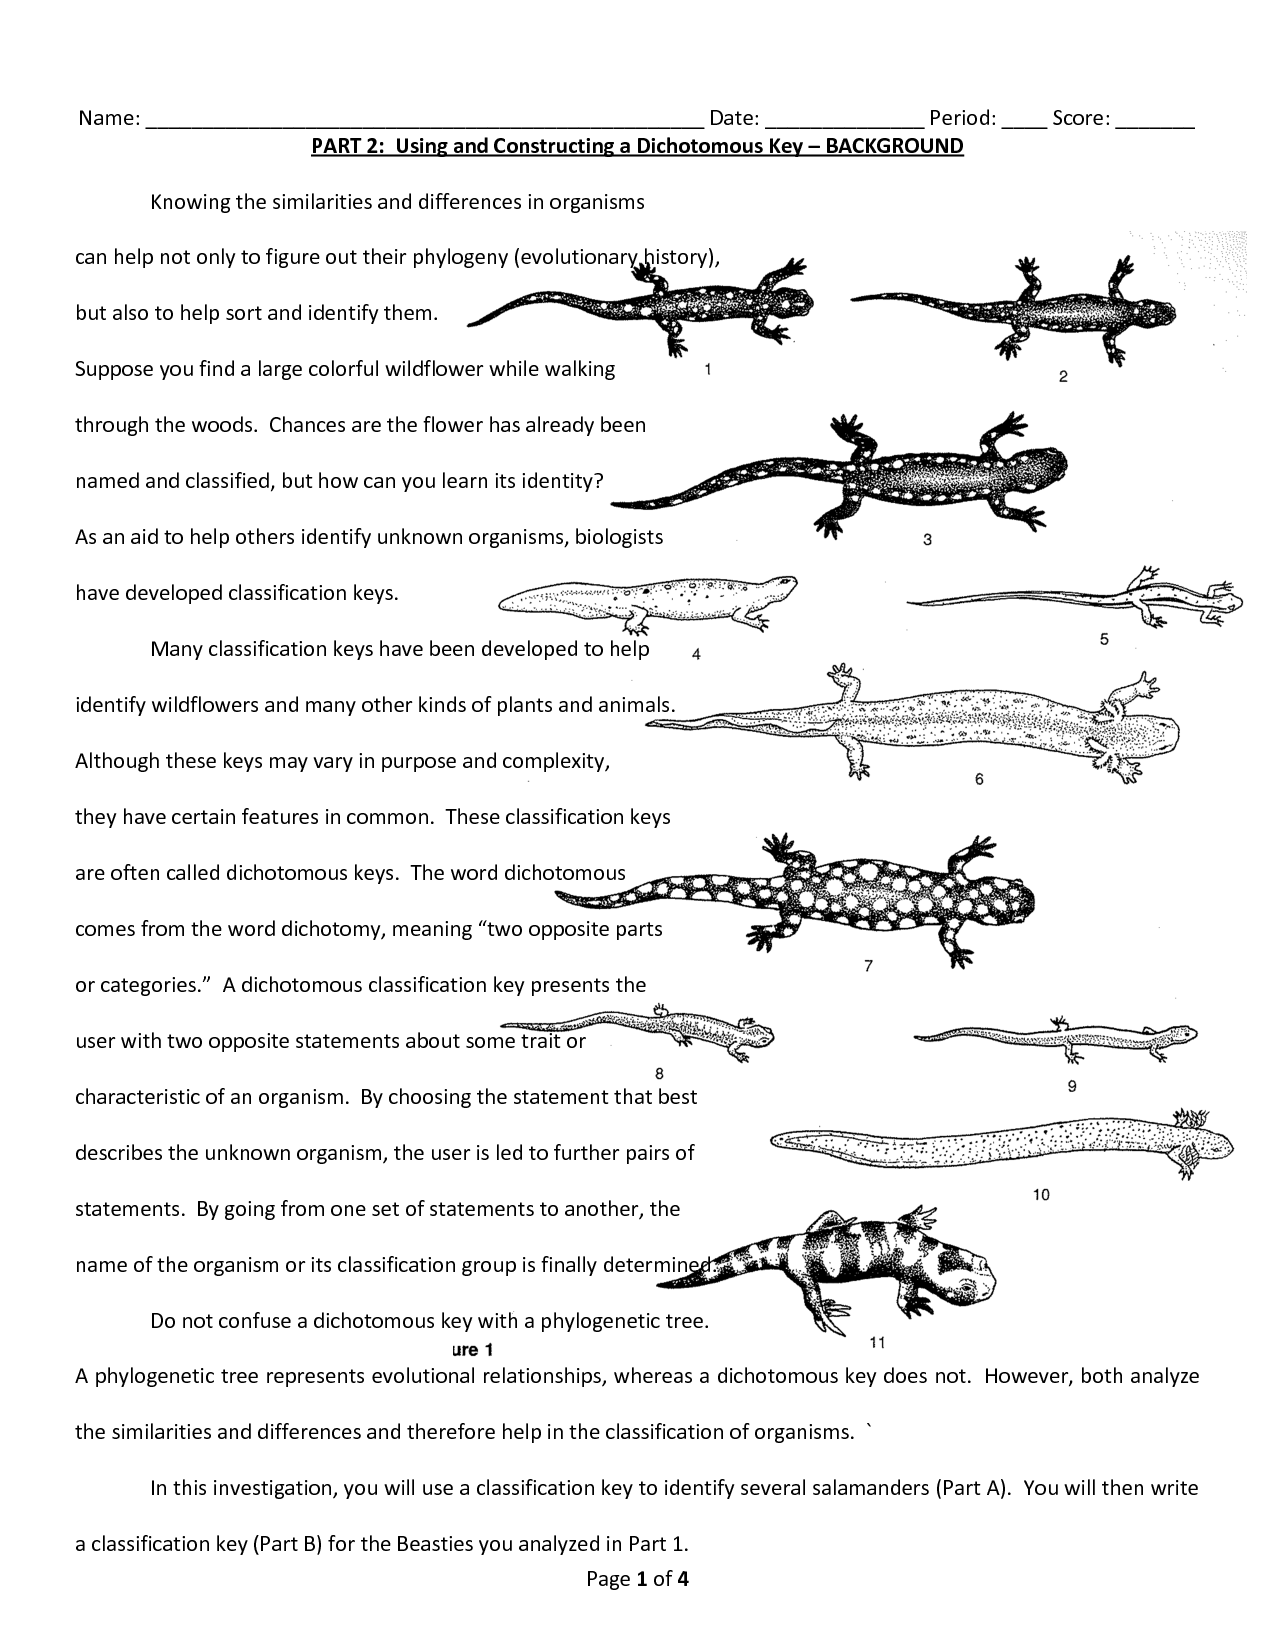 Salamander English Worksheets